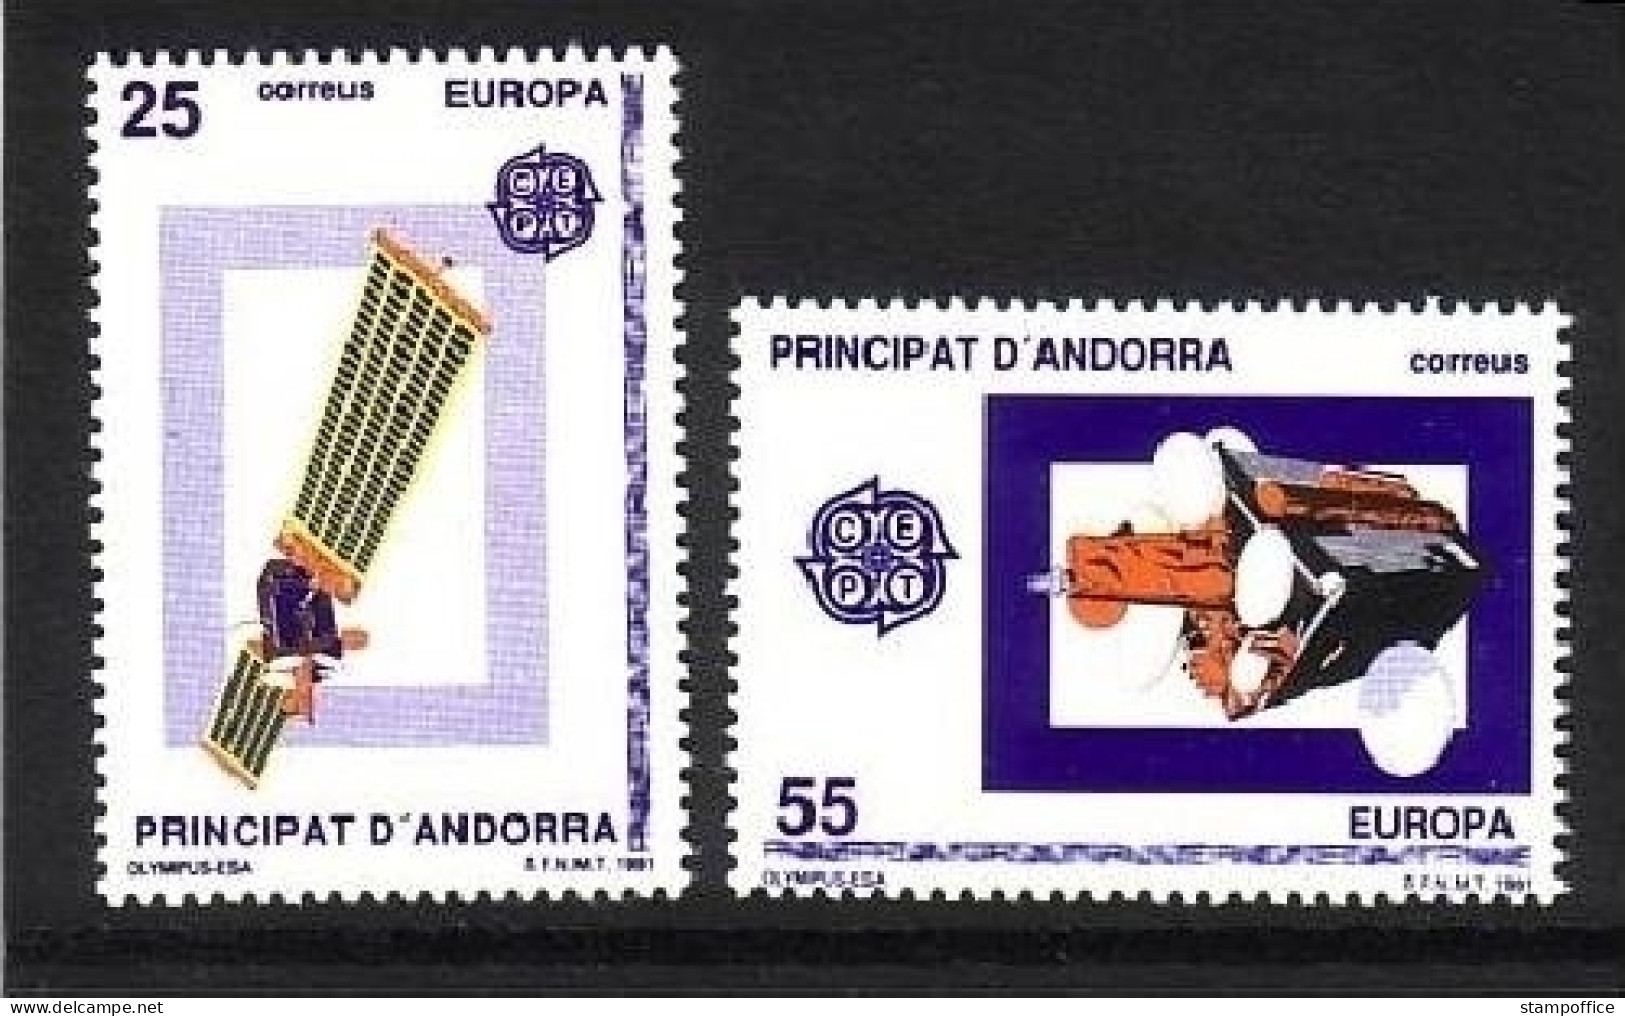 ANDORRA SPANISCH MI-NR. 221-222 POSTFRISCH(MINT) EUROPA 1991 - EUROPÄISCHE WELTRAUMFAHRT - 1991